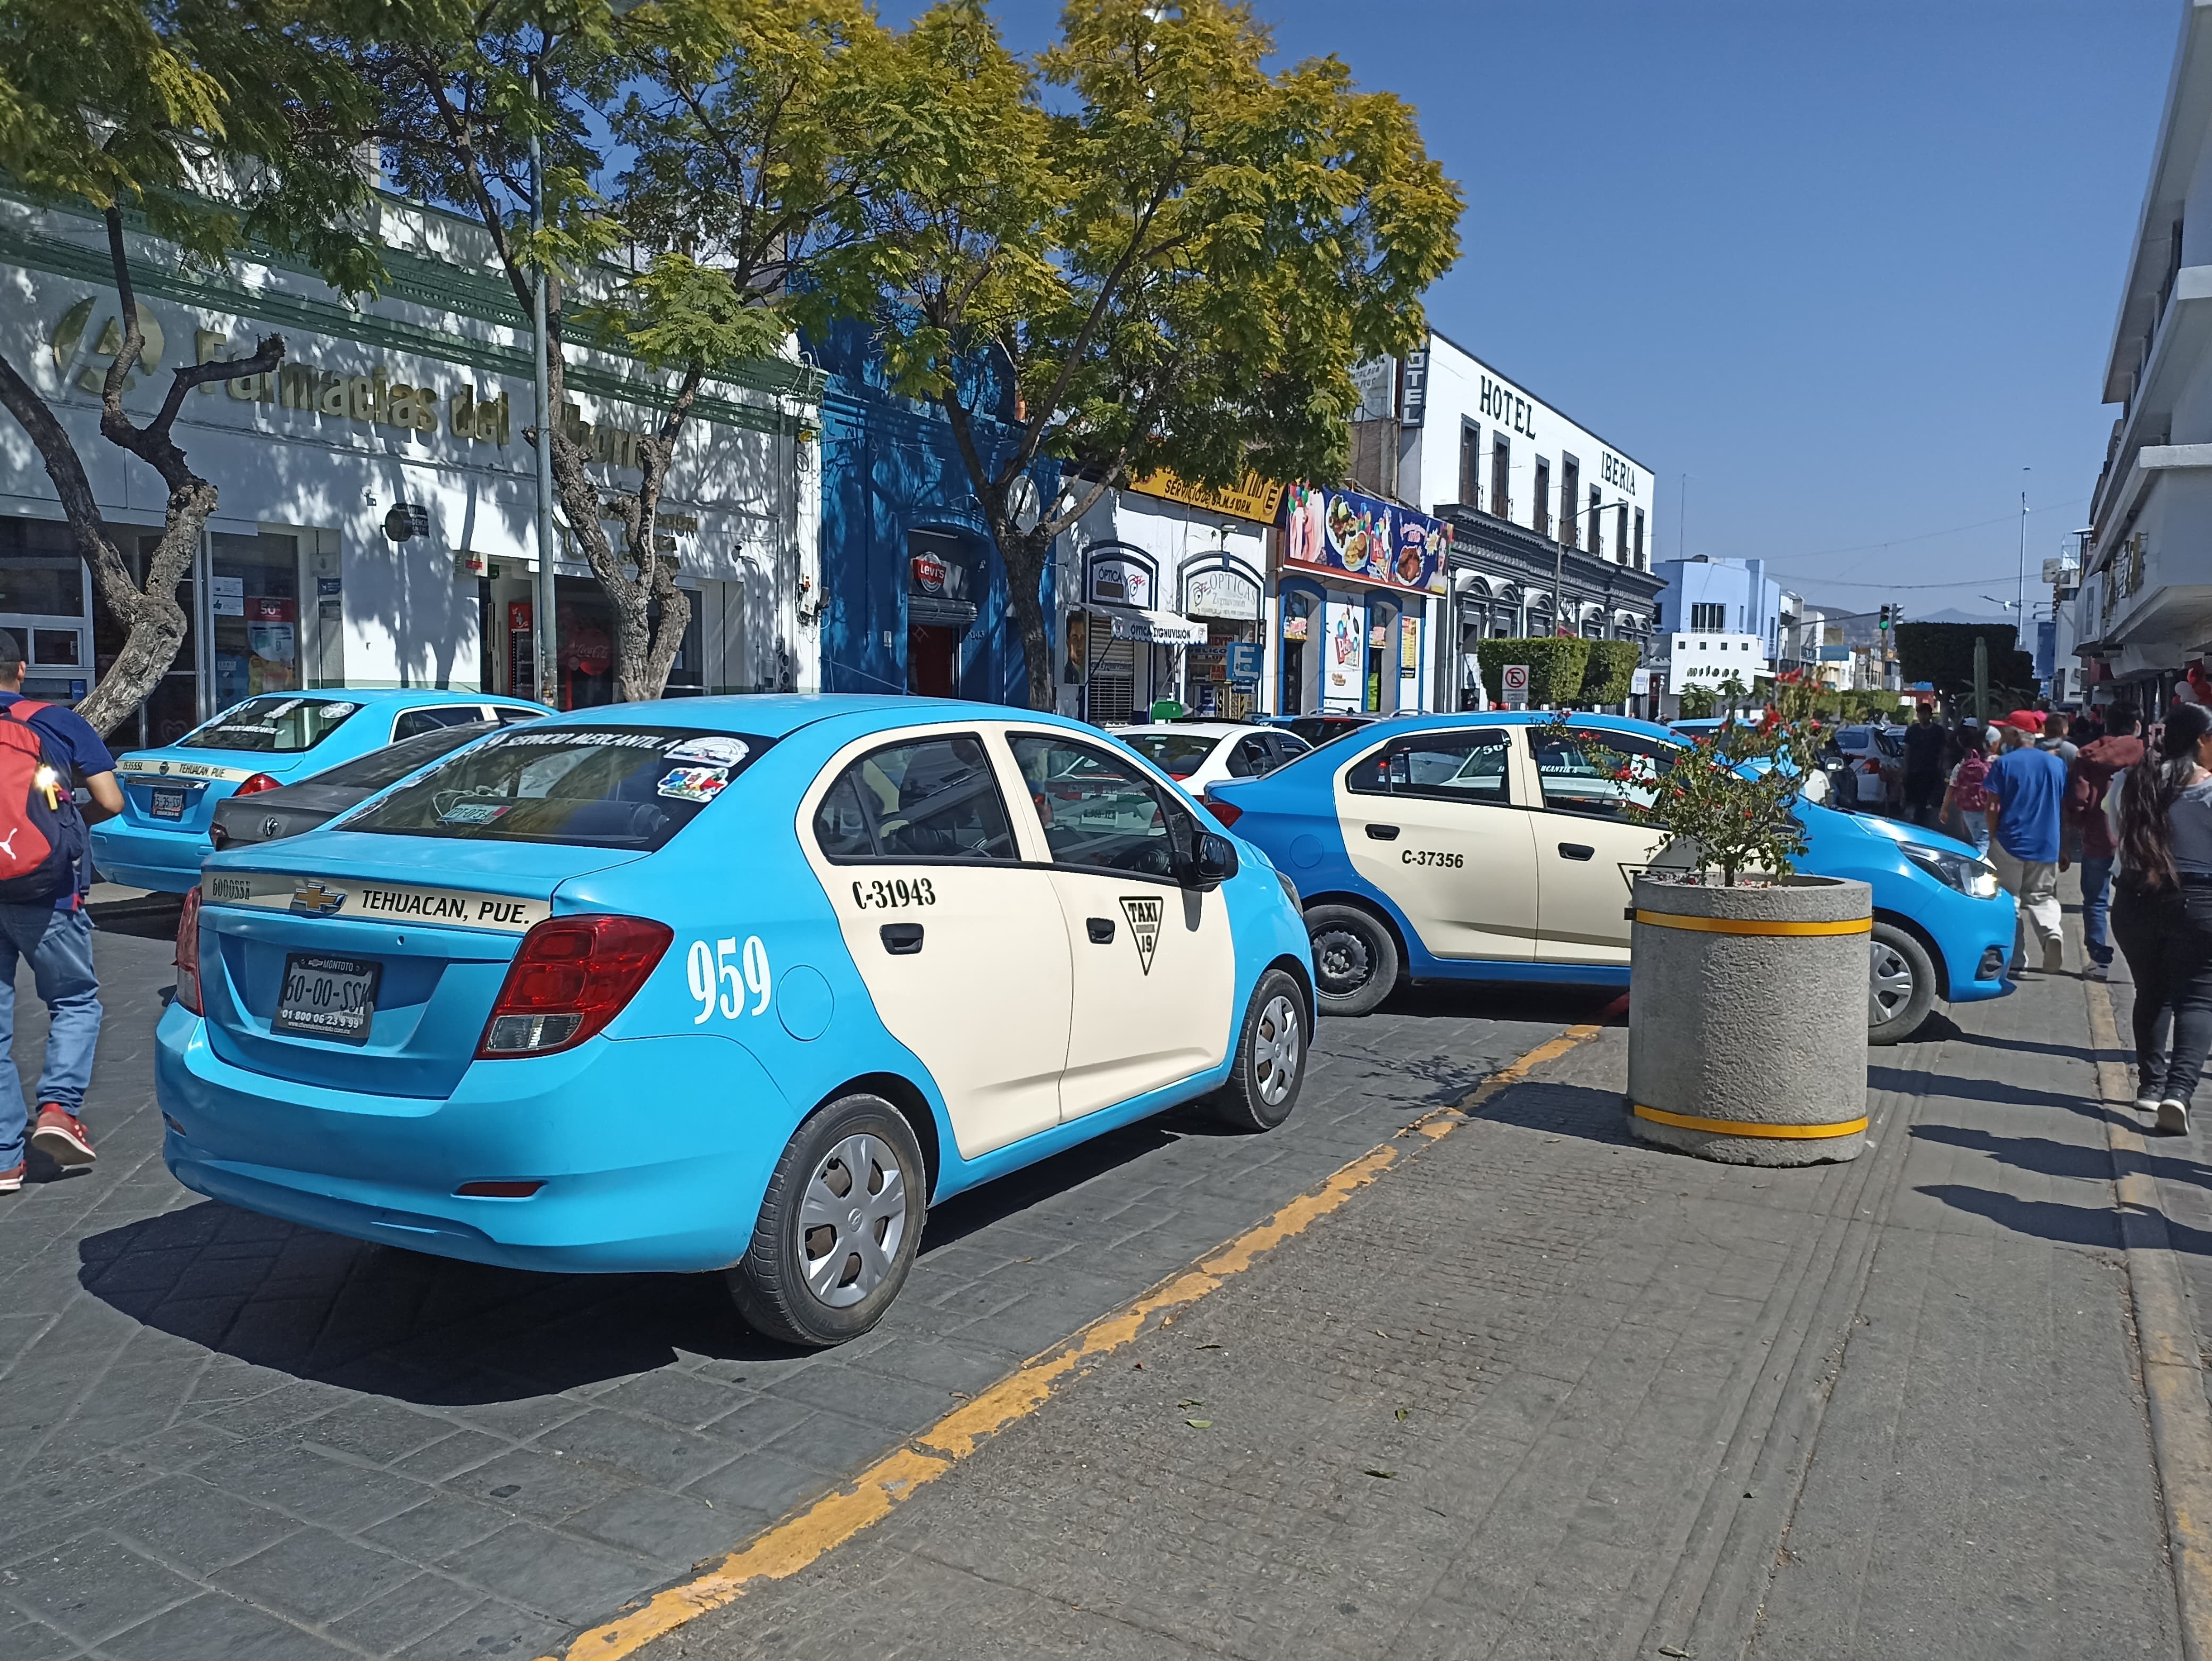 Amagan taxistas con más protestas contra servicio de plataformas